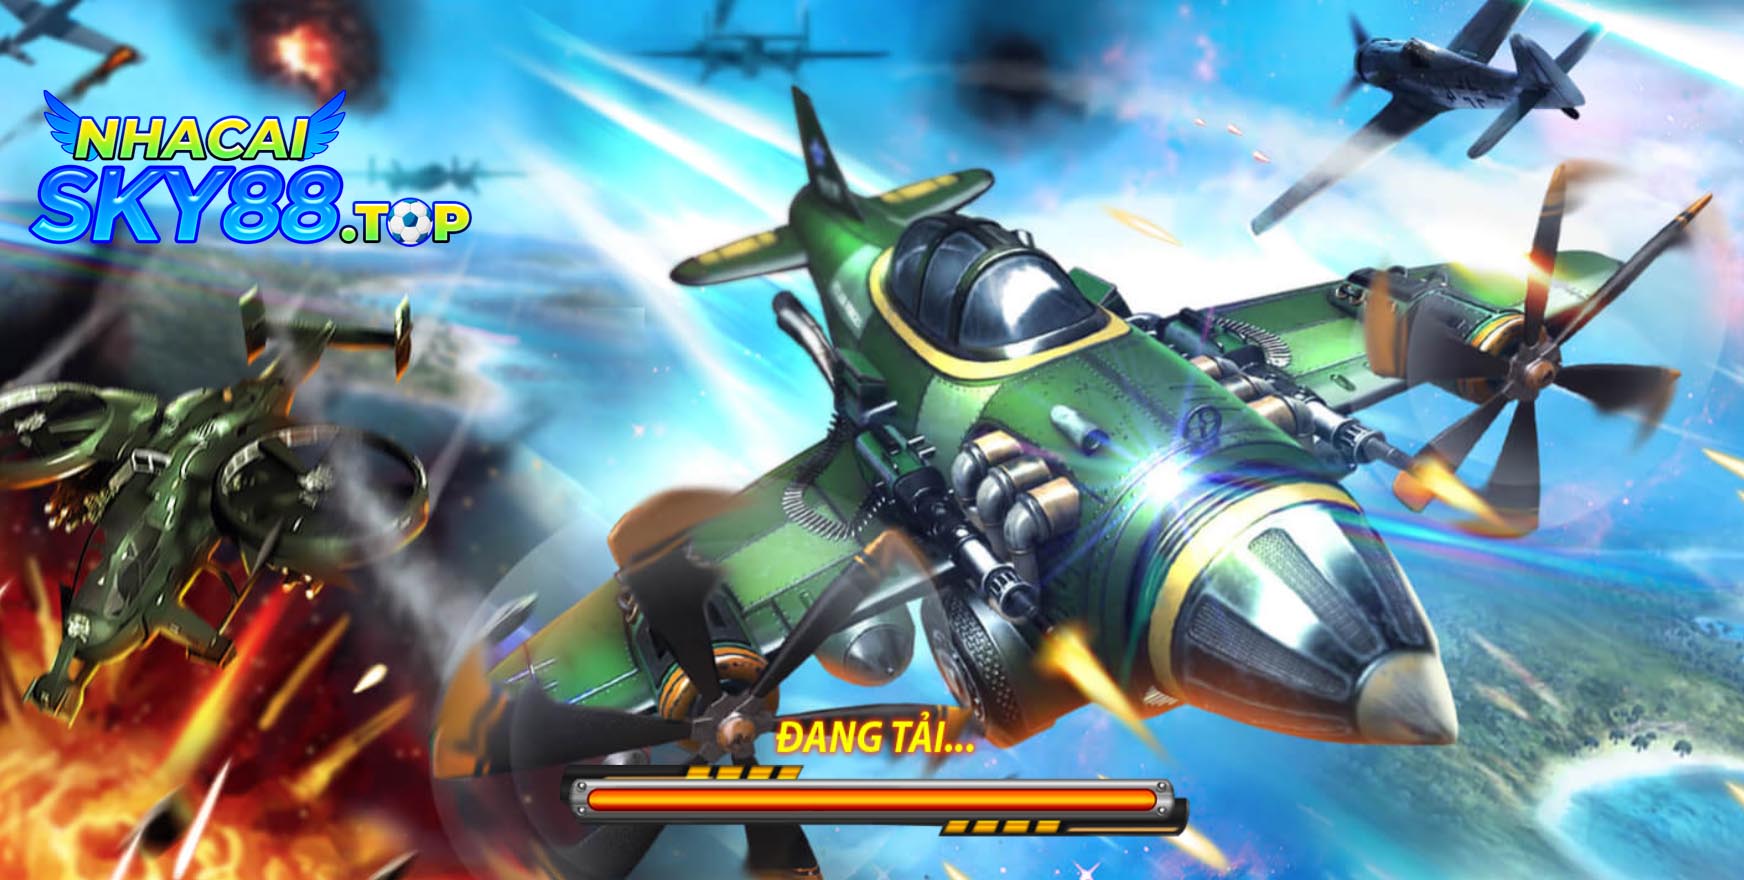 Chơi đại chiến B52 – Game bắn máy bay đổi thưởng kiểu mới